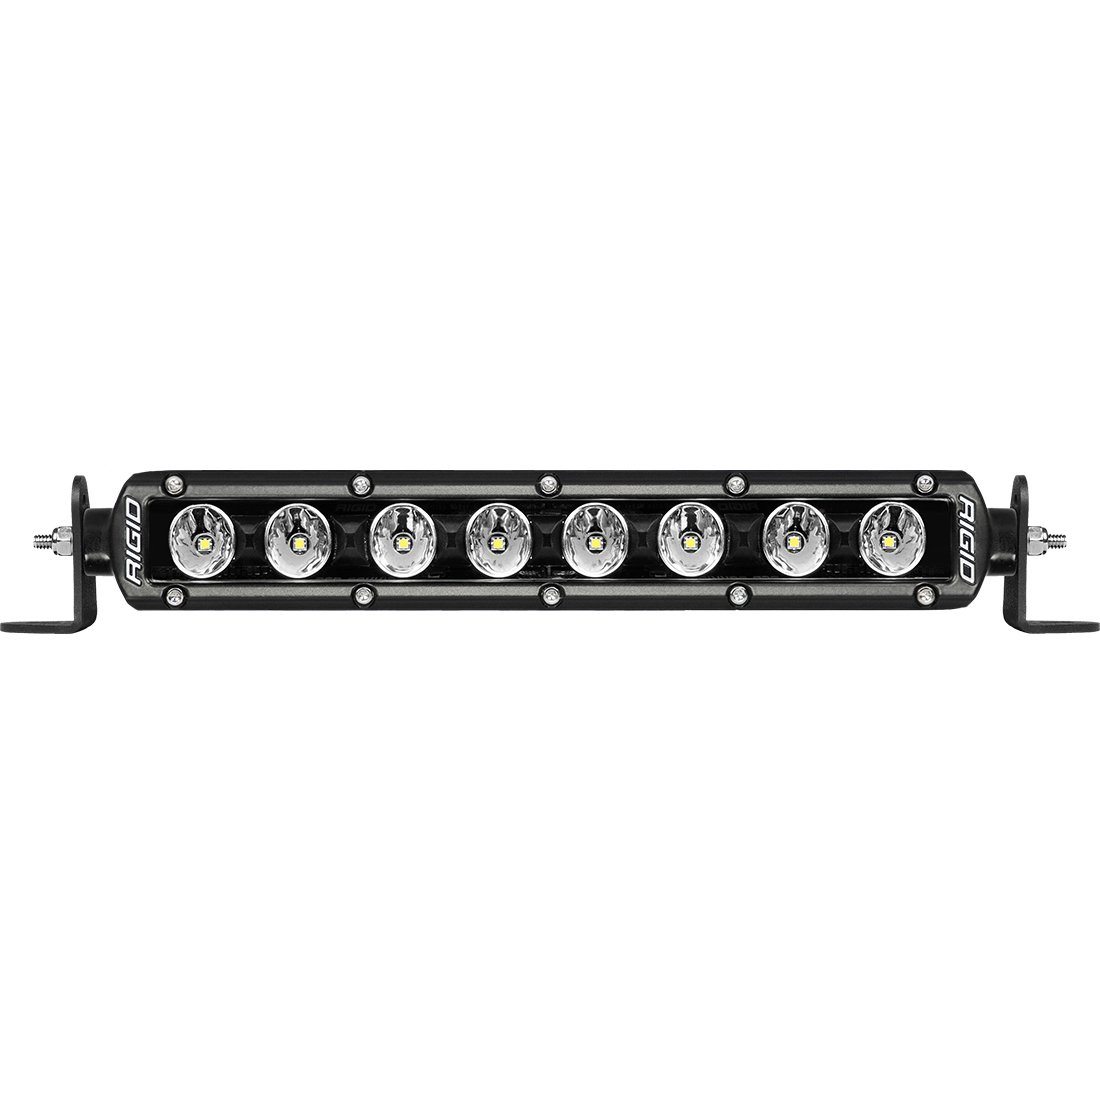 Radiance Plus SR-Series LED Light Bar Lighting Rigid Industries